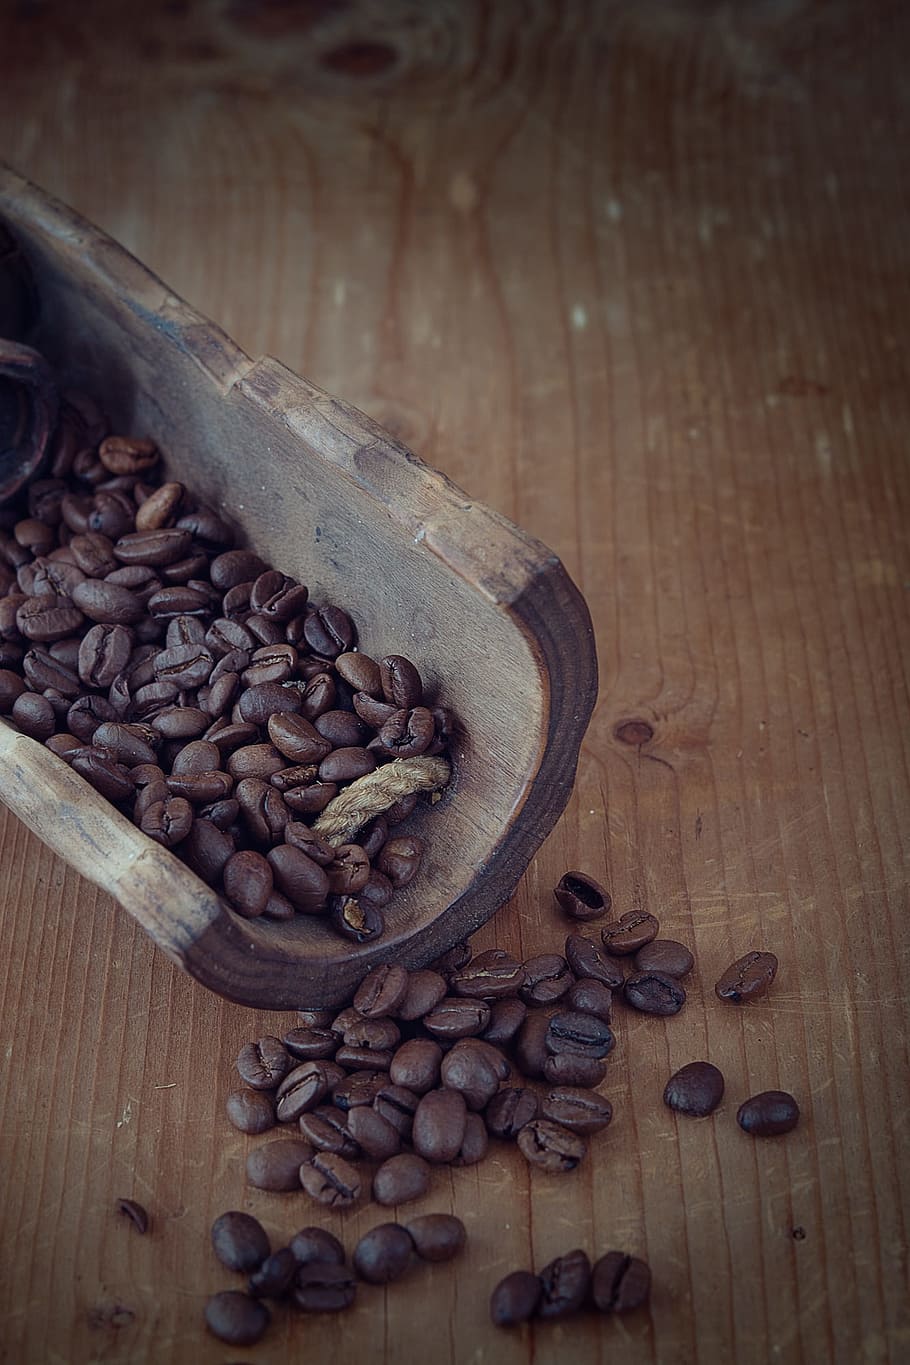 コーヒー, コーヒー豆, ロースト, ブラウン, ダーク, カフェイン, 天然物, 木製シャベル, 木材, 閉じる